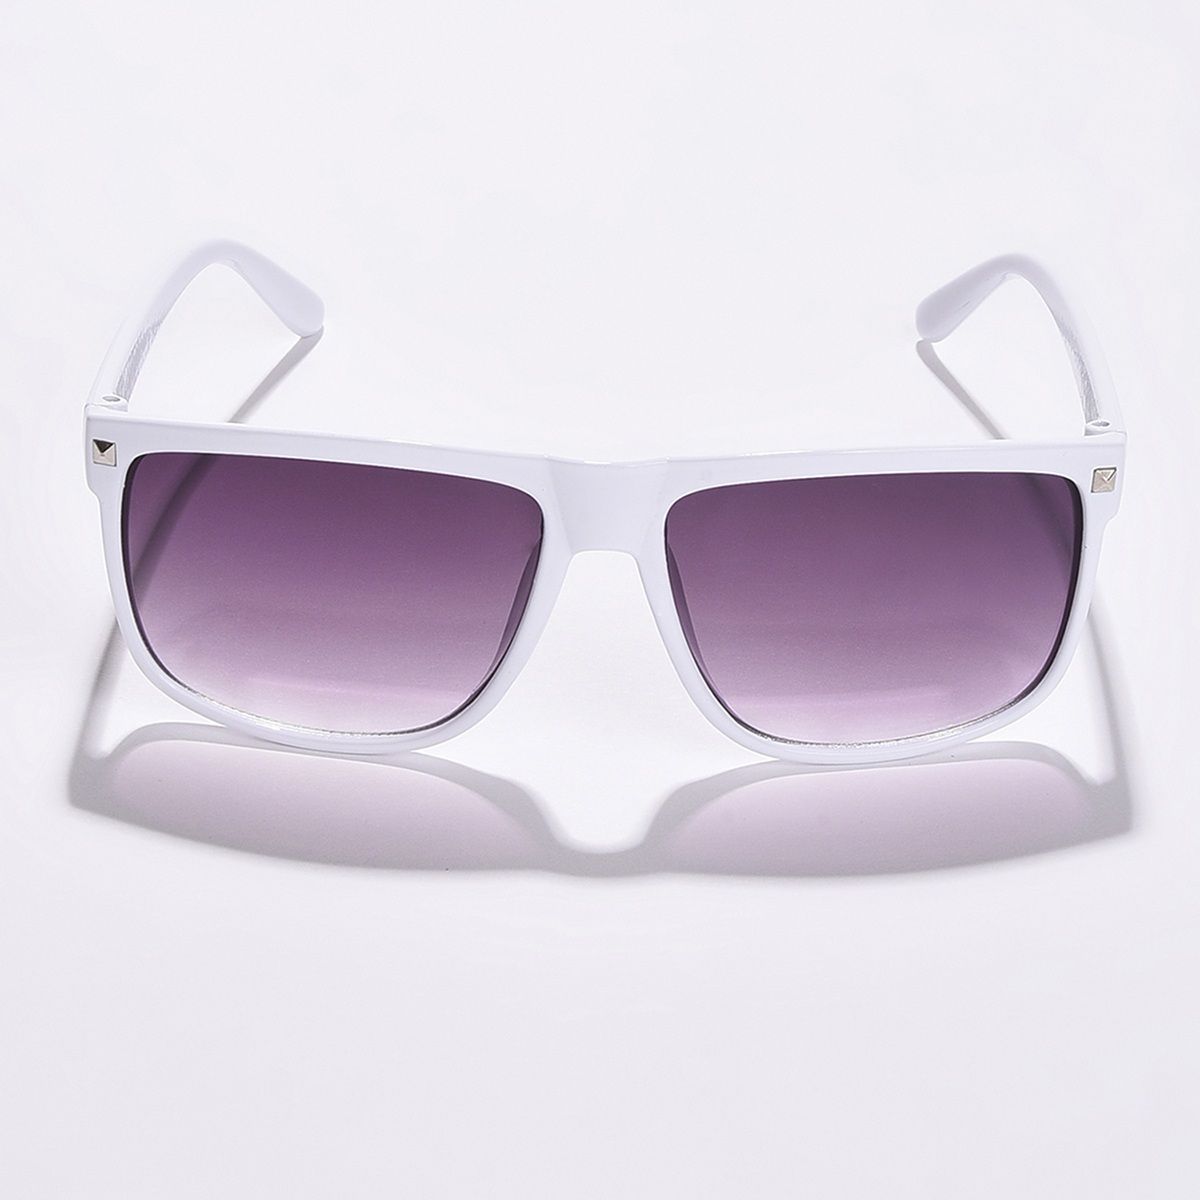 Haute Sauce Full-Rim Oversized Sunglasses For Women (White, OS)